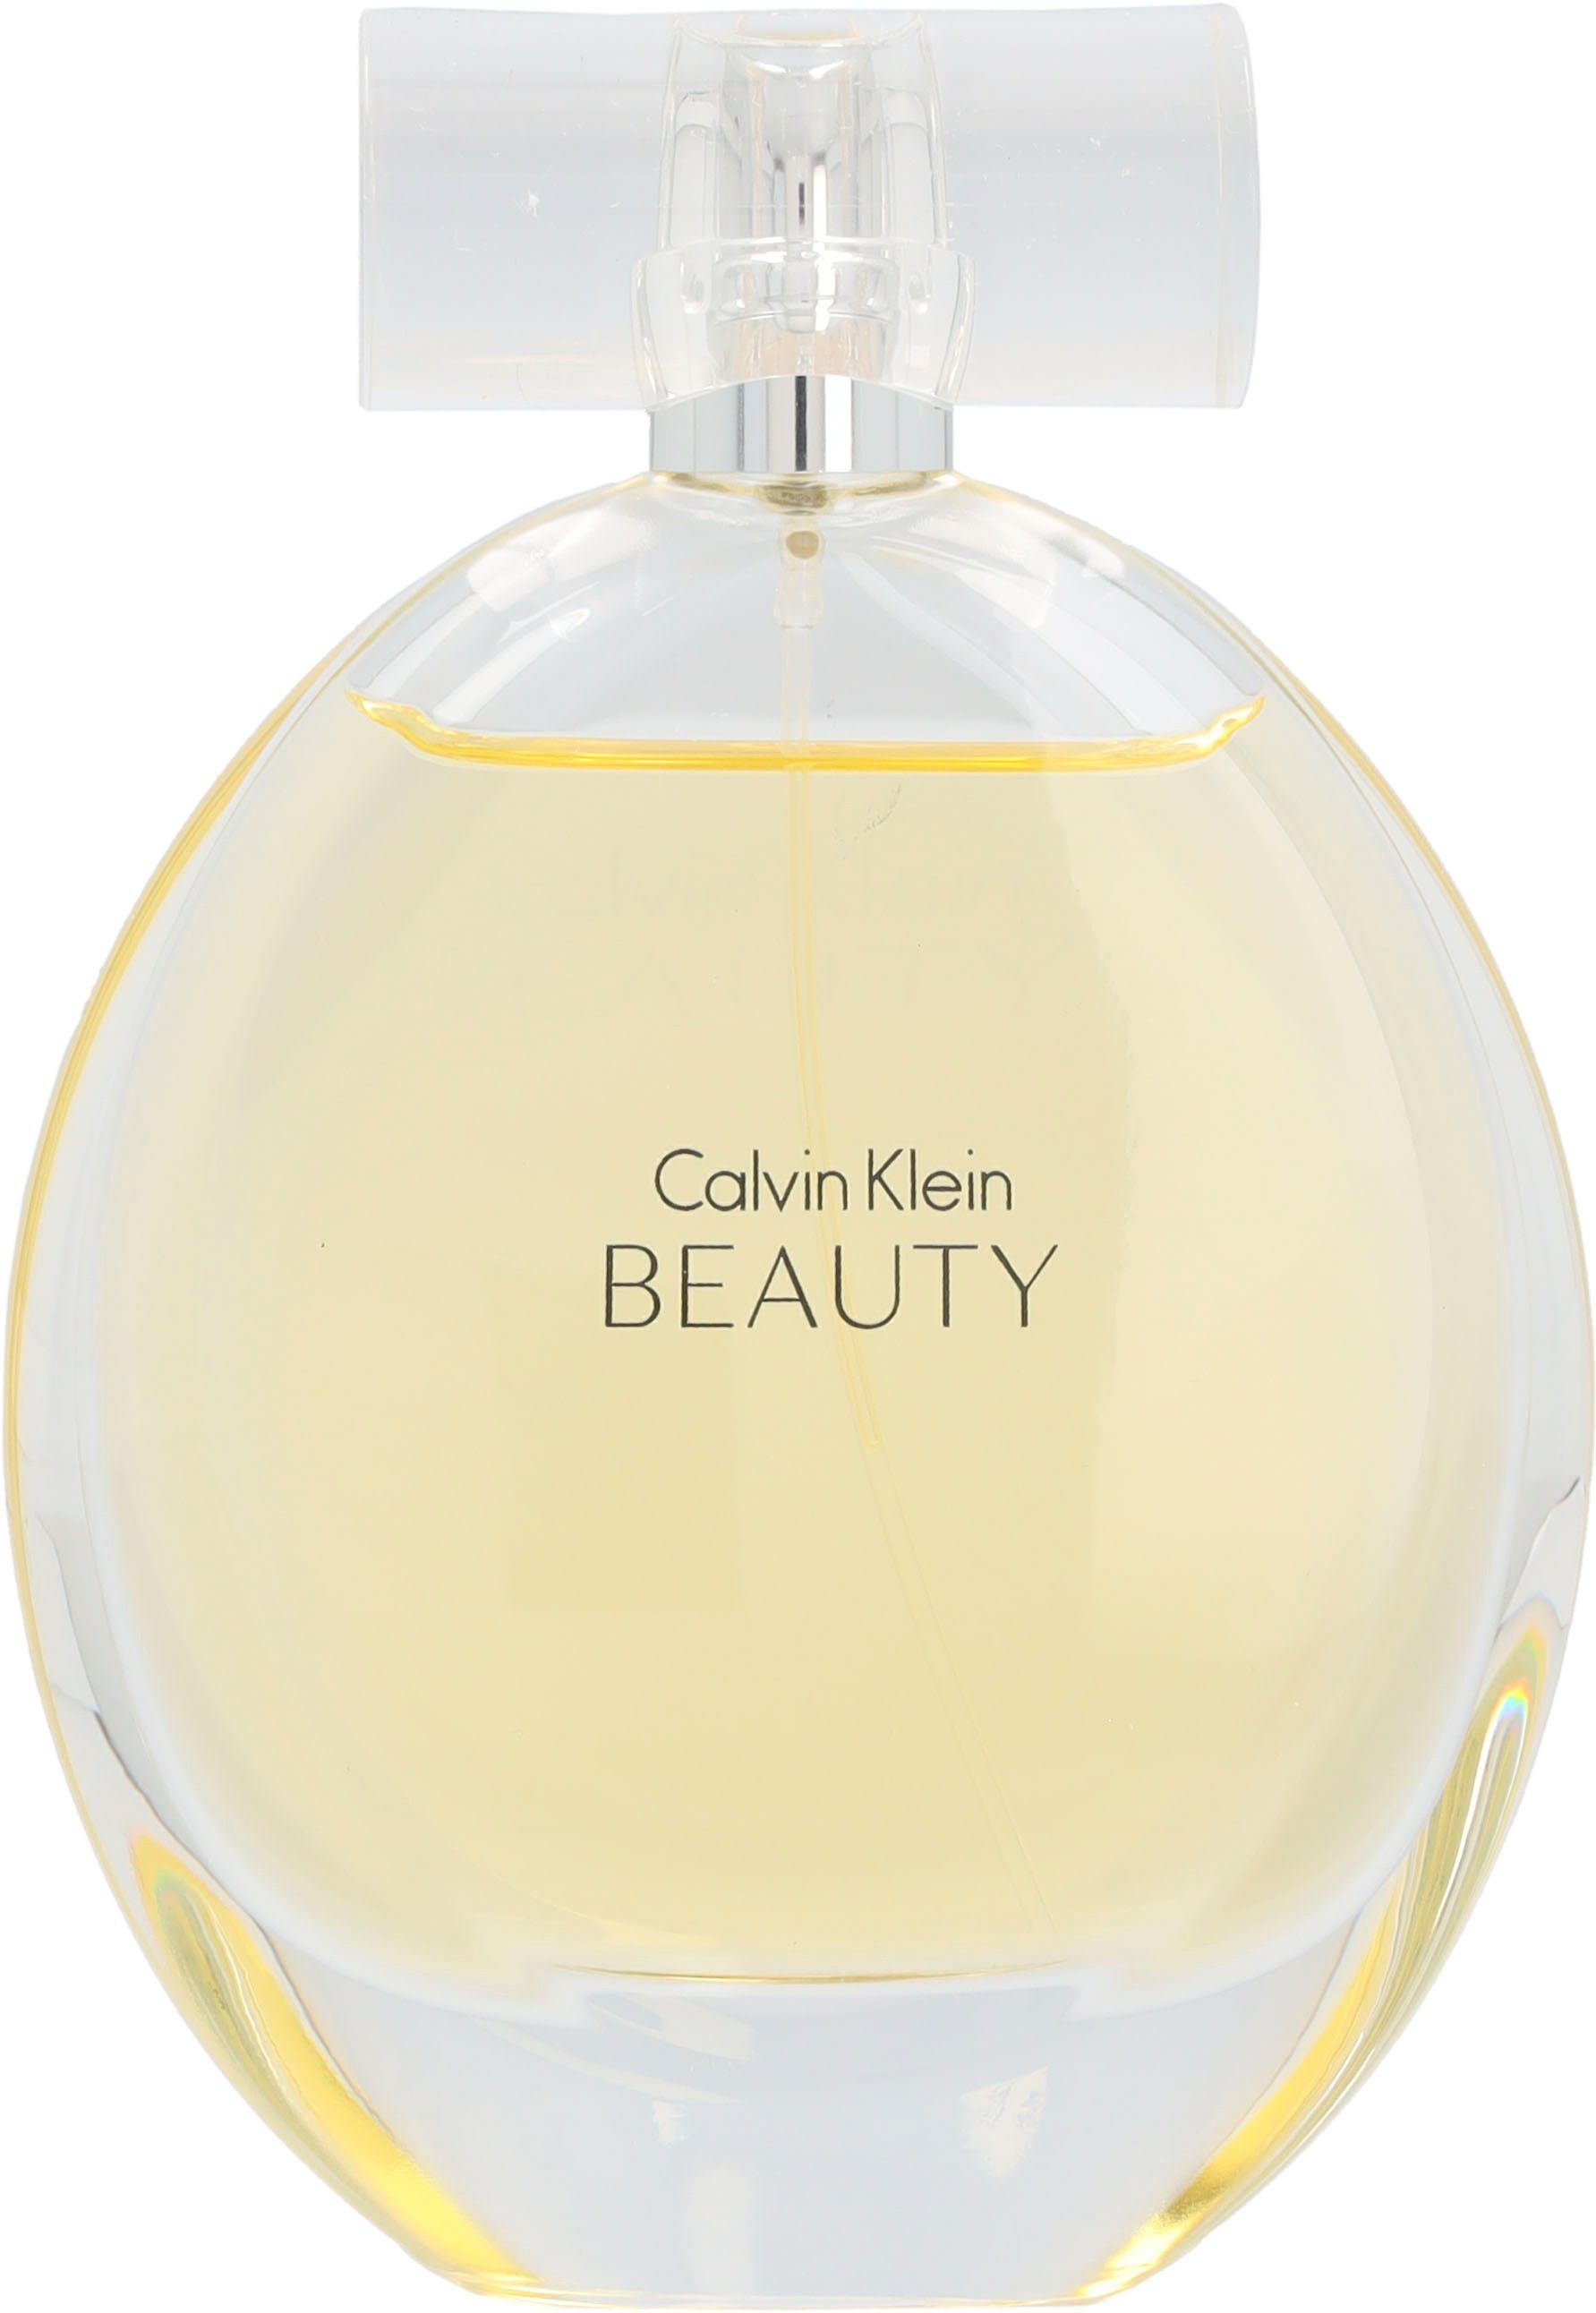 Calvin Klein Eau Parfum de Beauty